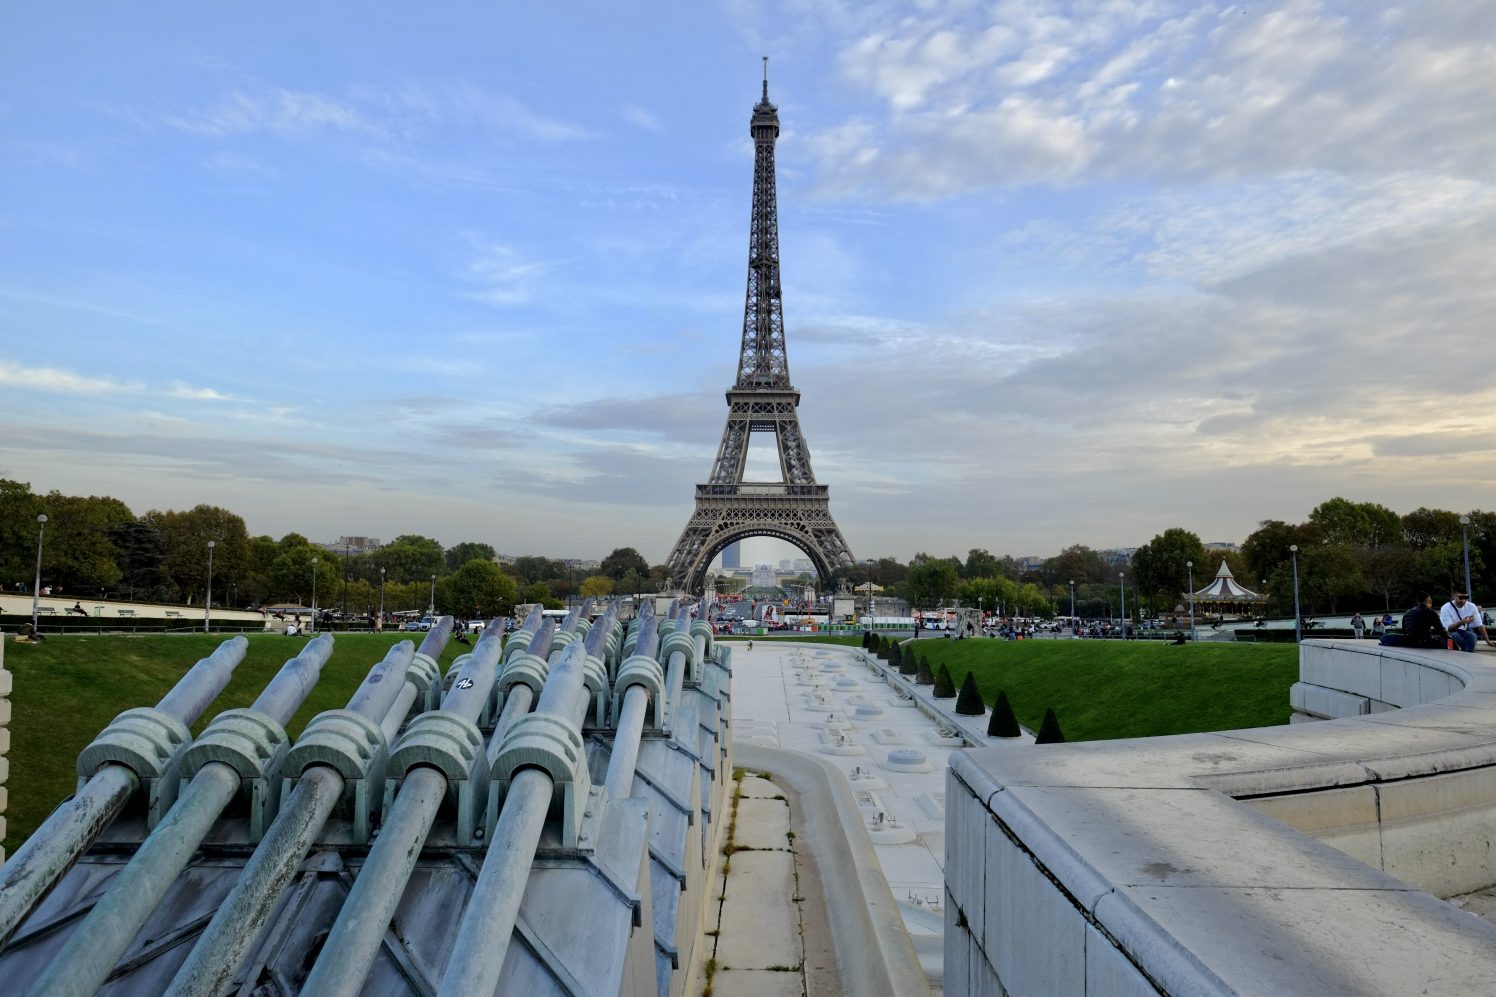 L'une des plus belles fontaines se trouve entre la Tour Eiffel et le Palais de Chaillot